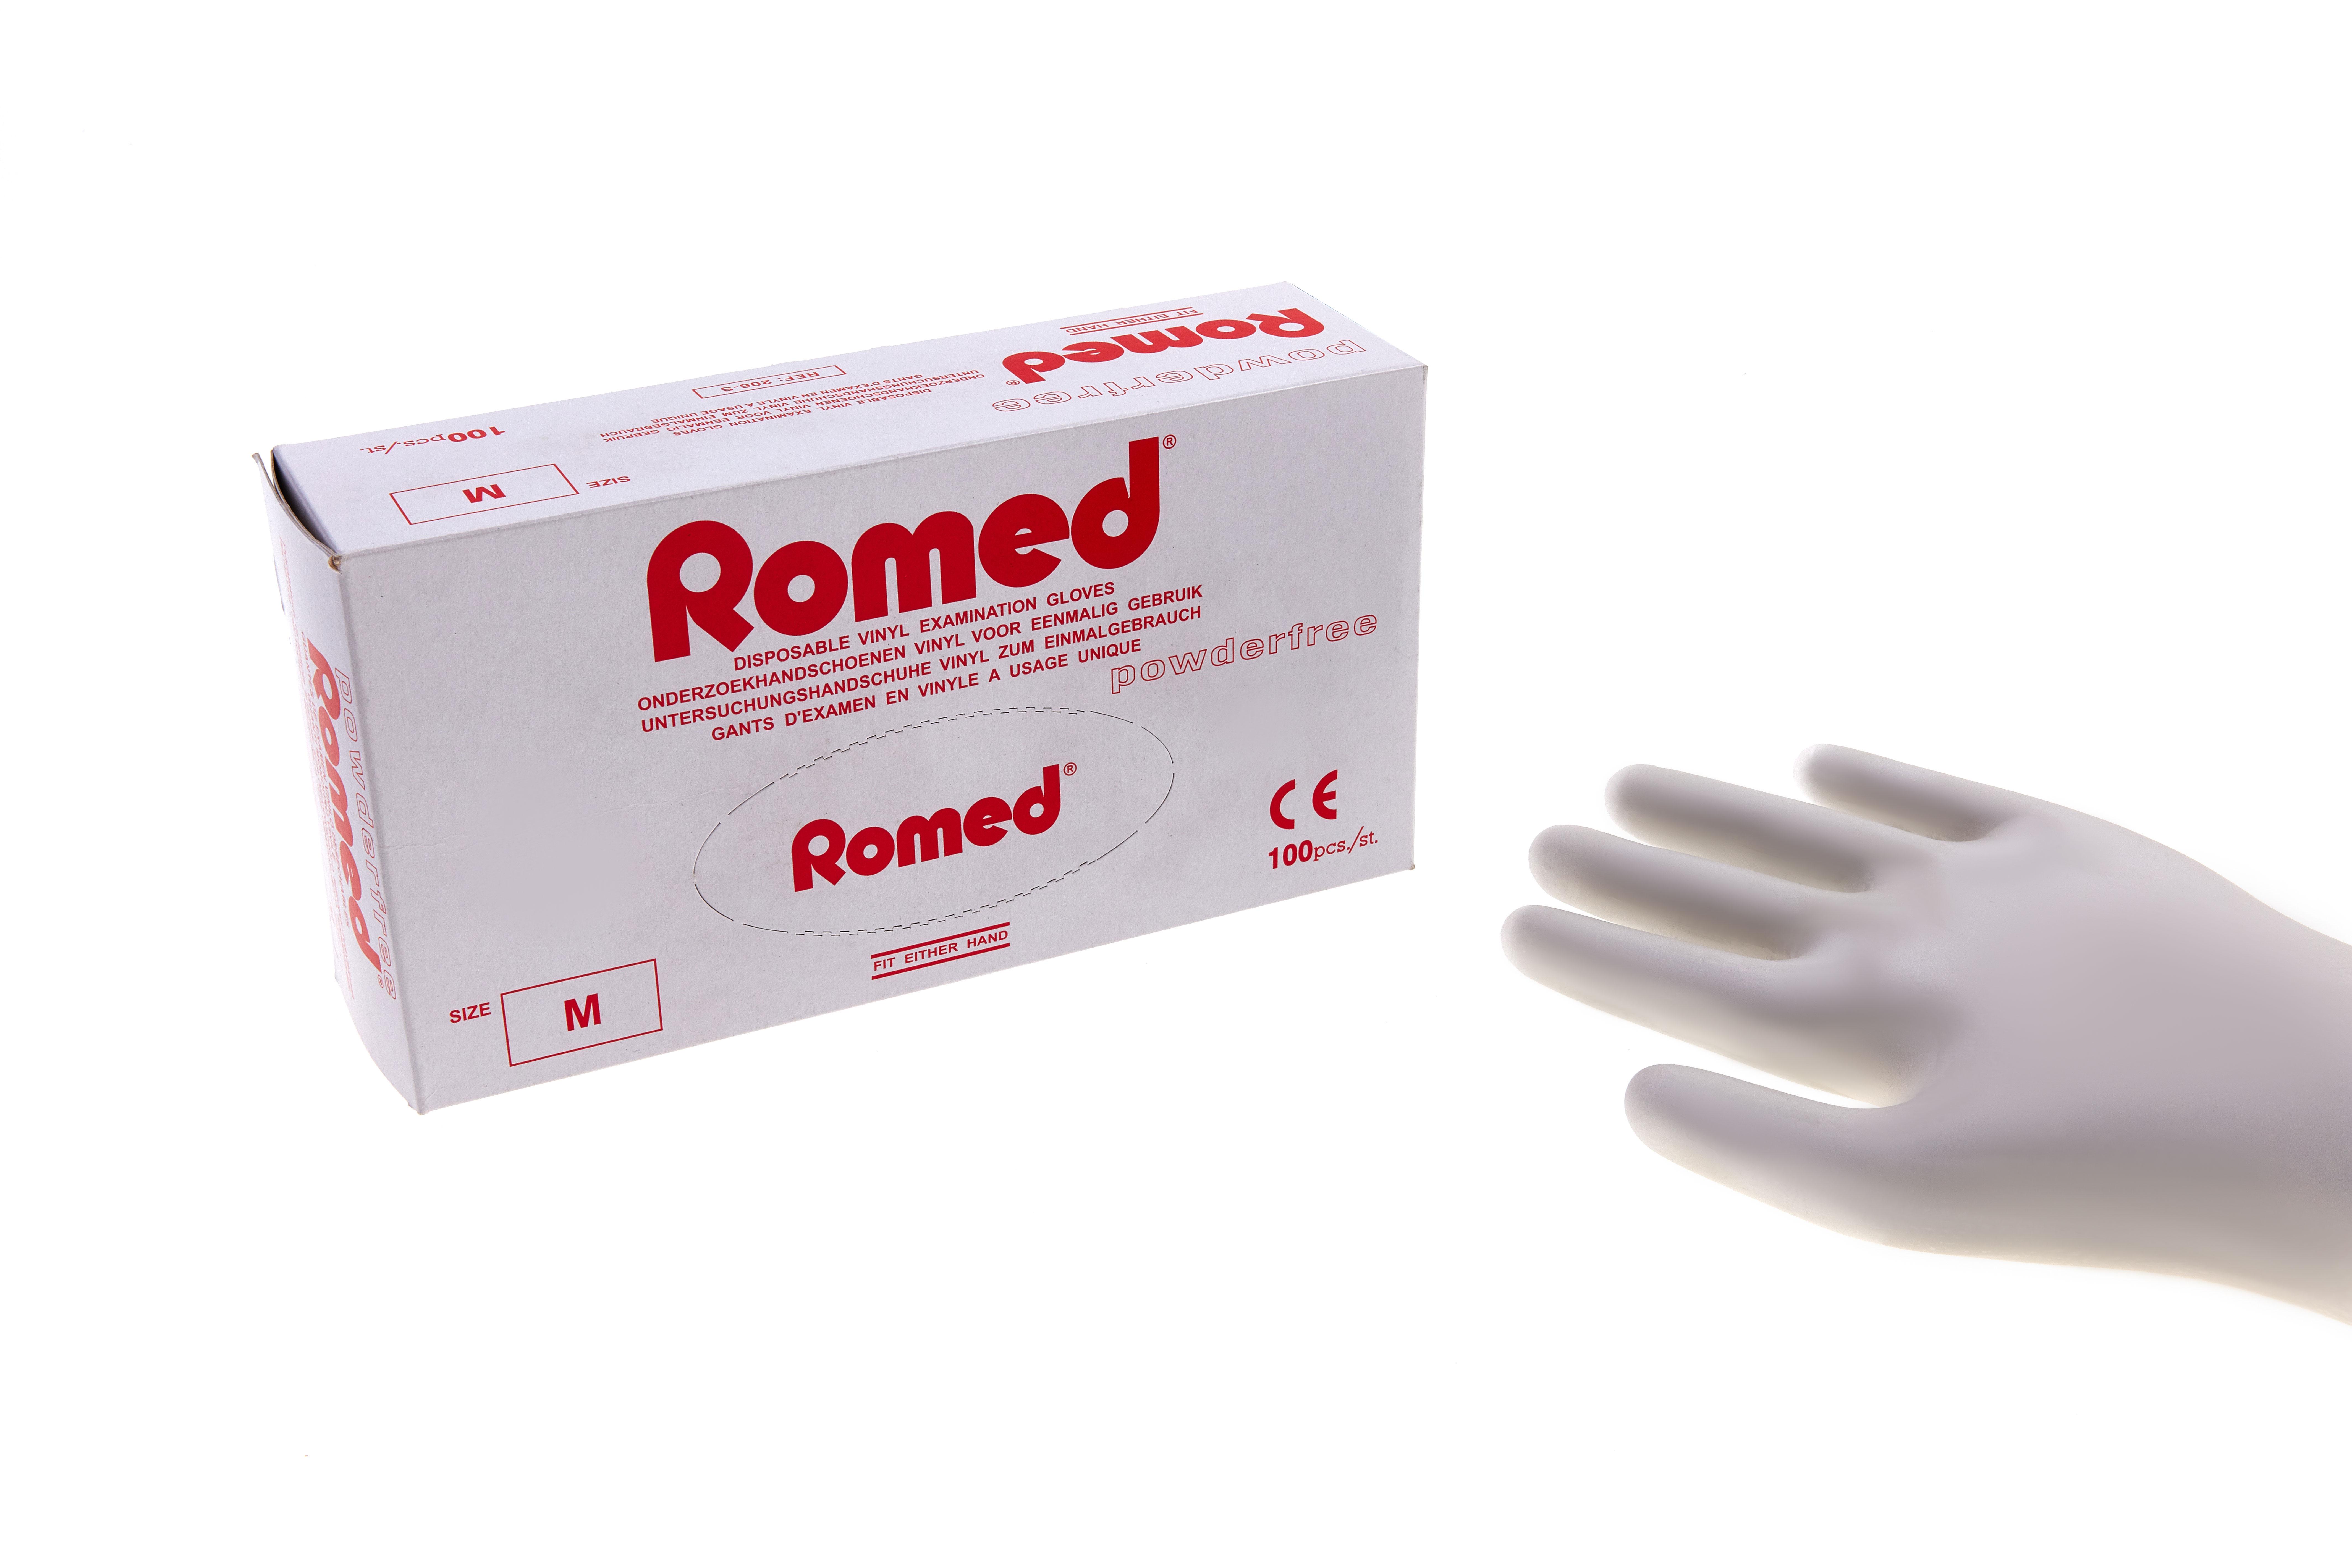 201-S Gants d'examen Romed en vinyle, non stériles, non poudrés, 100 unités par boîte distributrice, 10 x 100 = 1 000 unités par carton.